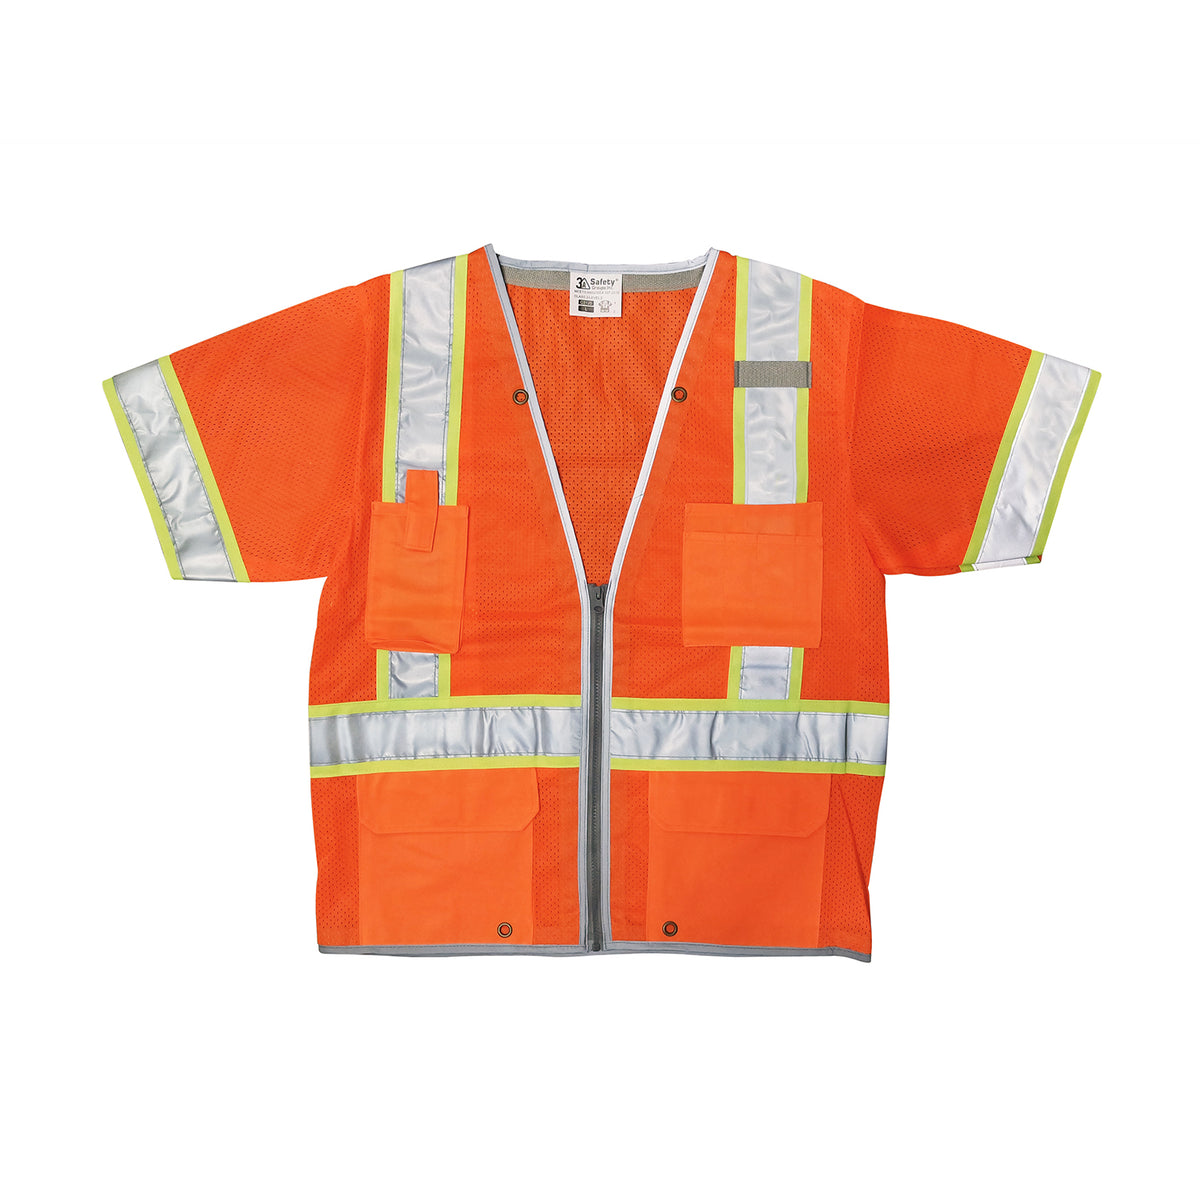 3A Safety Groups Surveyor Safety Vest, ANSI Class 3 - Orange -Safety- eGPS Solutions Inc.